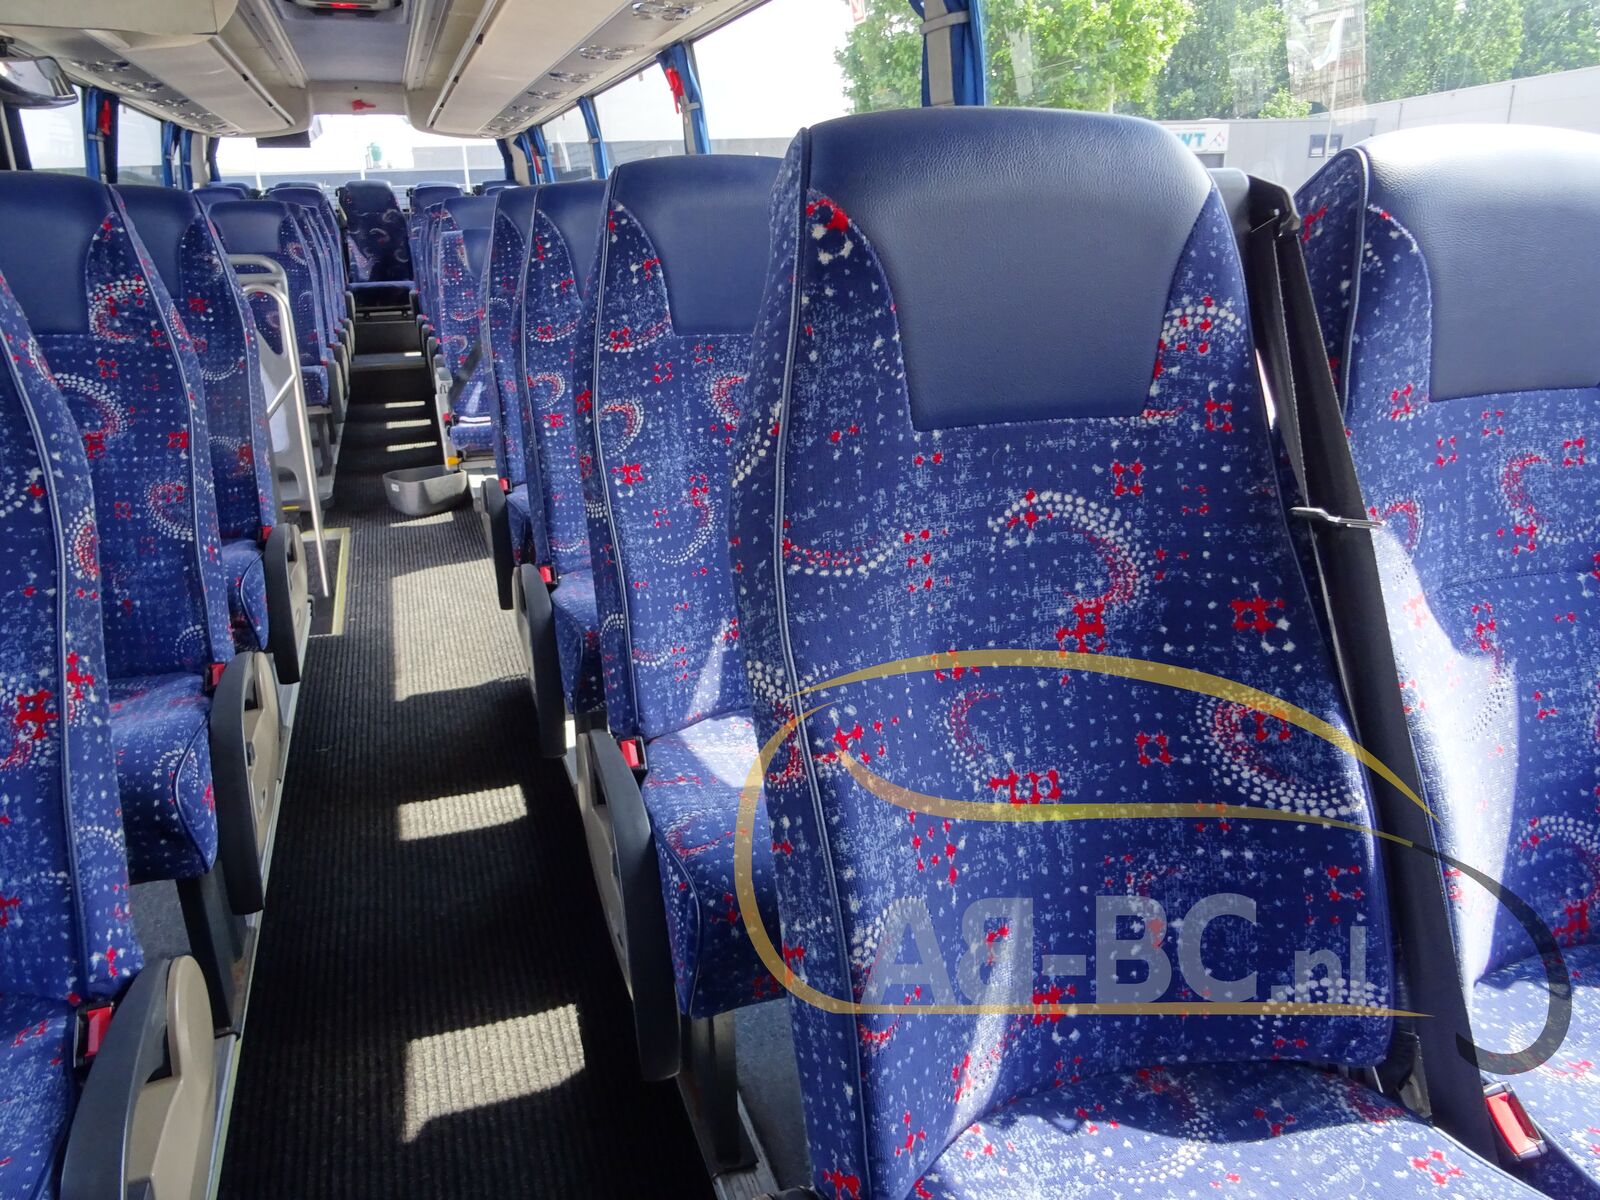 coach-bus-SCANIA-K400-Beulas-52-Seats-Liftbus-EURO-5---1654605356522239104_orig_c692a46289208a103aa6d25ca17777dd--22060715244081546600